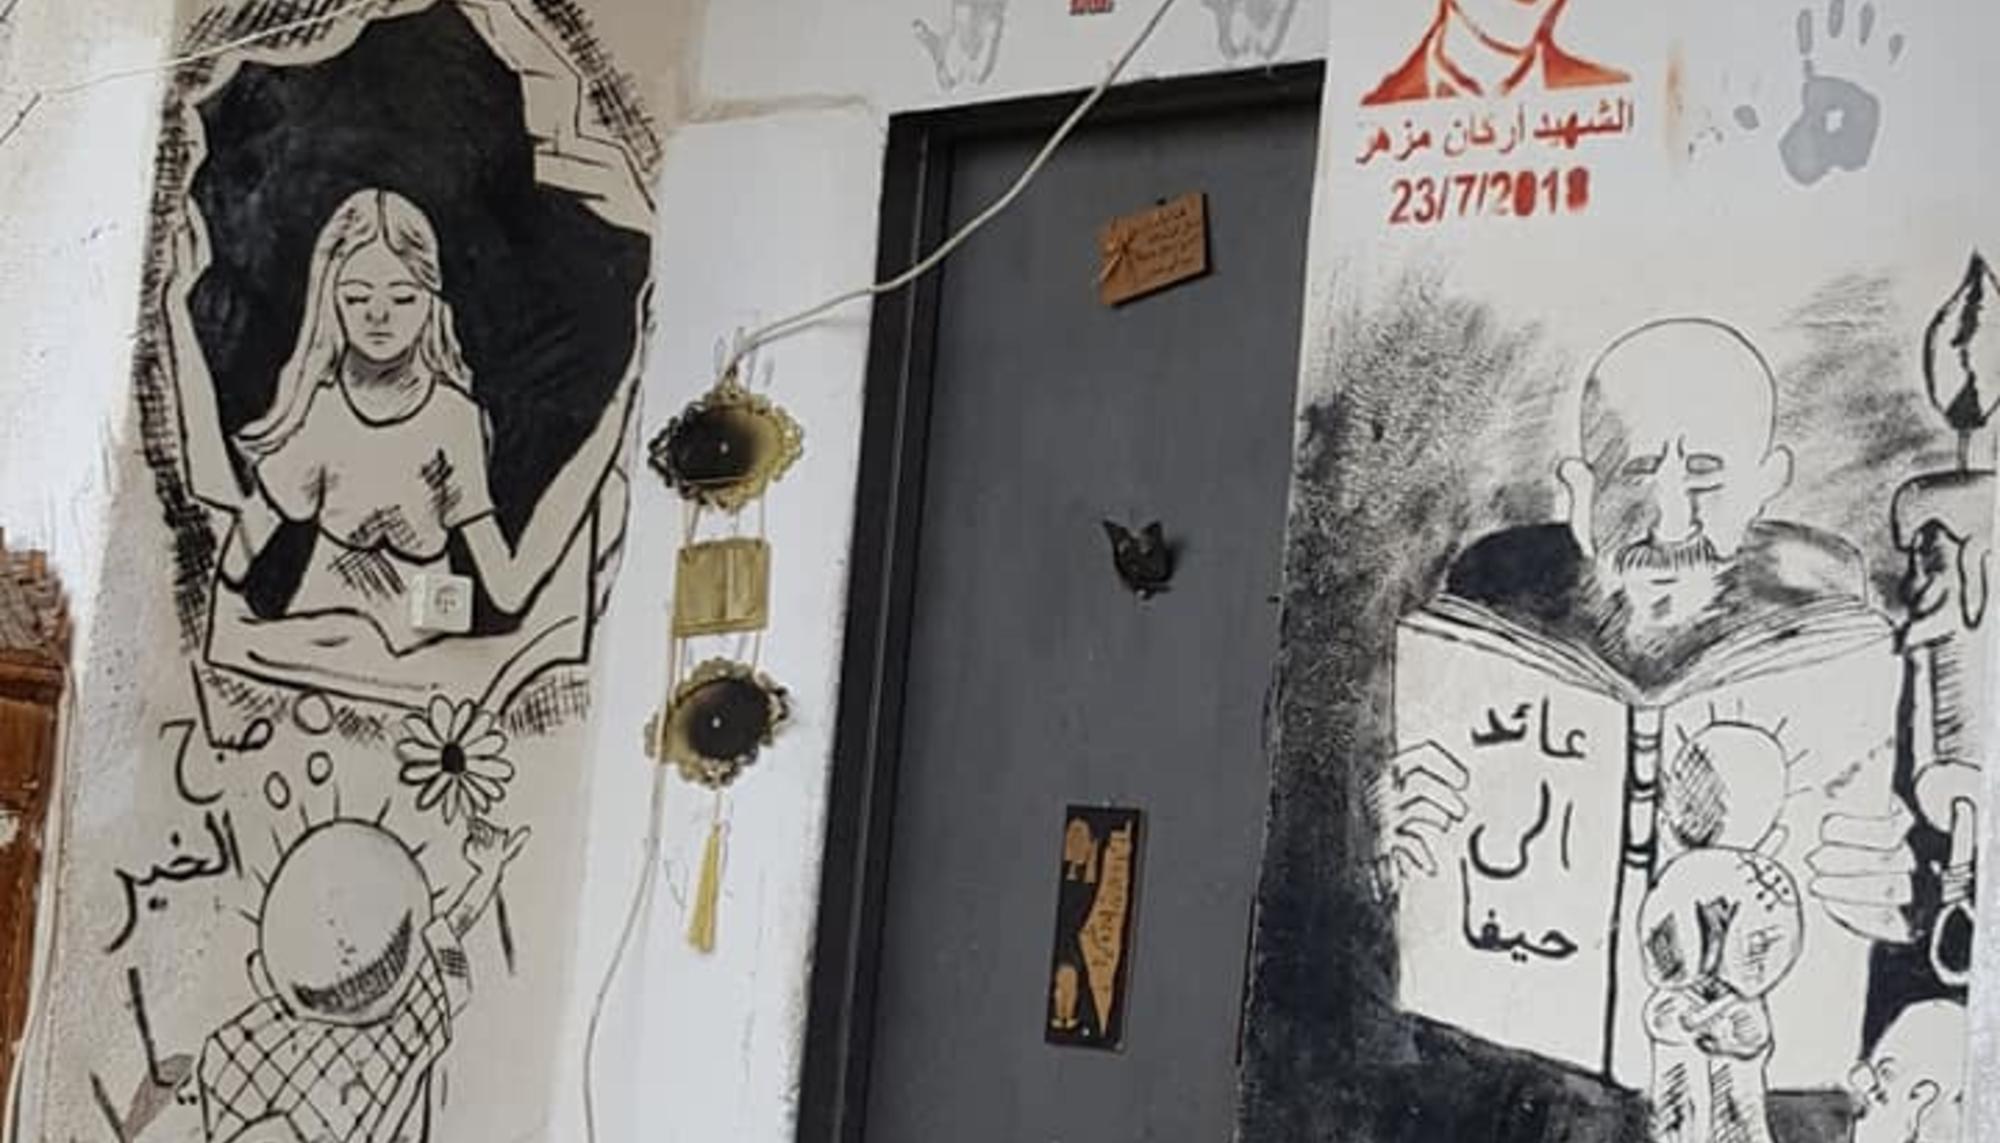 Puerta de una casa en el Campo de refugiados de Dheisheh (Belén) con imágenes del mártir Arkan Mizher y del viñetista Naji Al Ali. Créditos: Badil